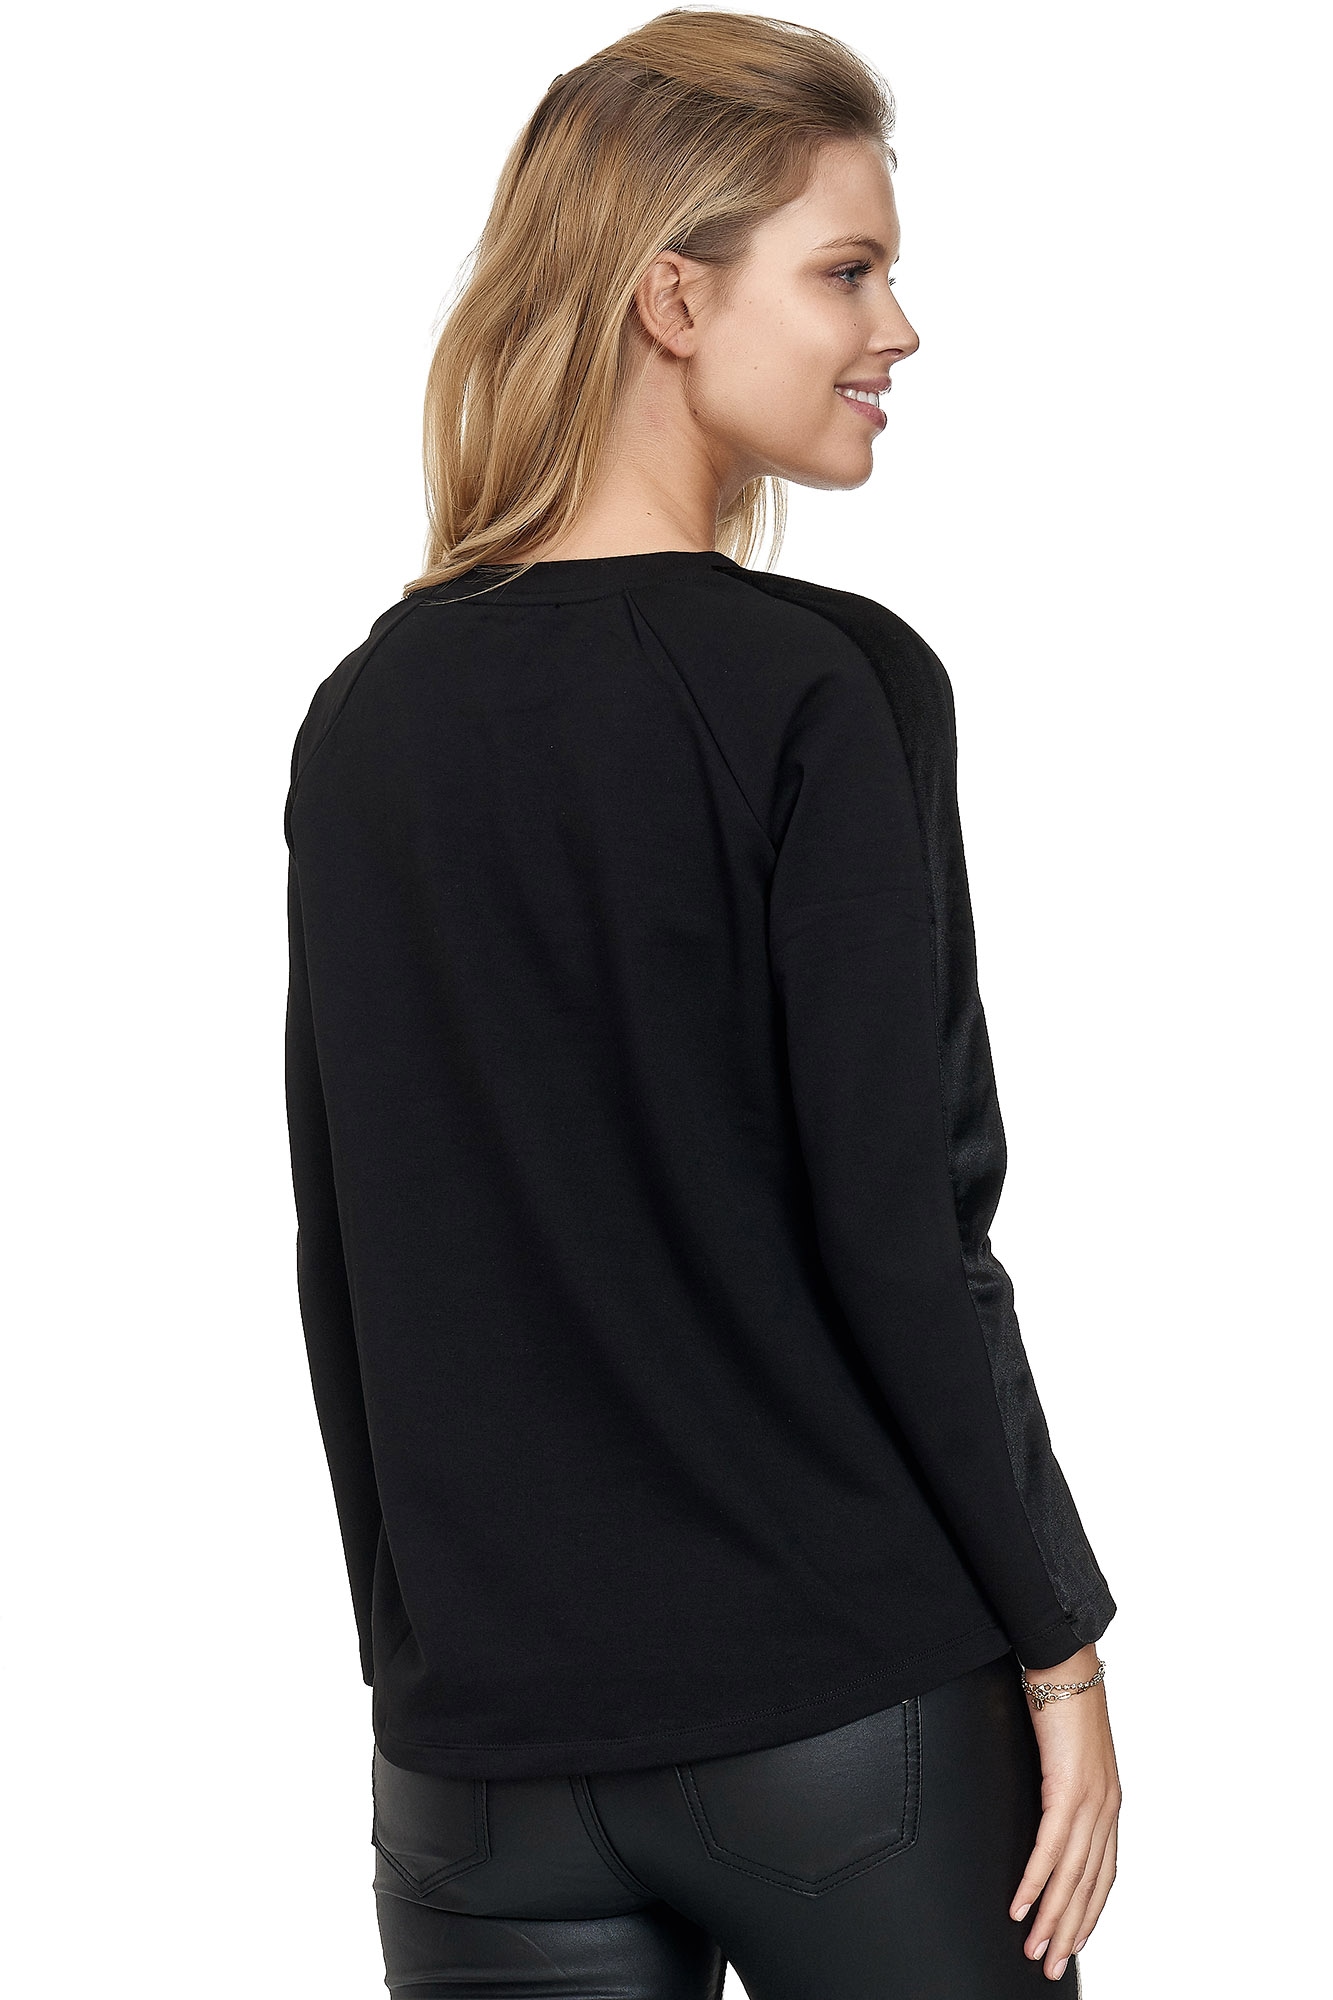 Decay Sweatshirt, mit schwarzen Samt-Seitenstreifen